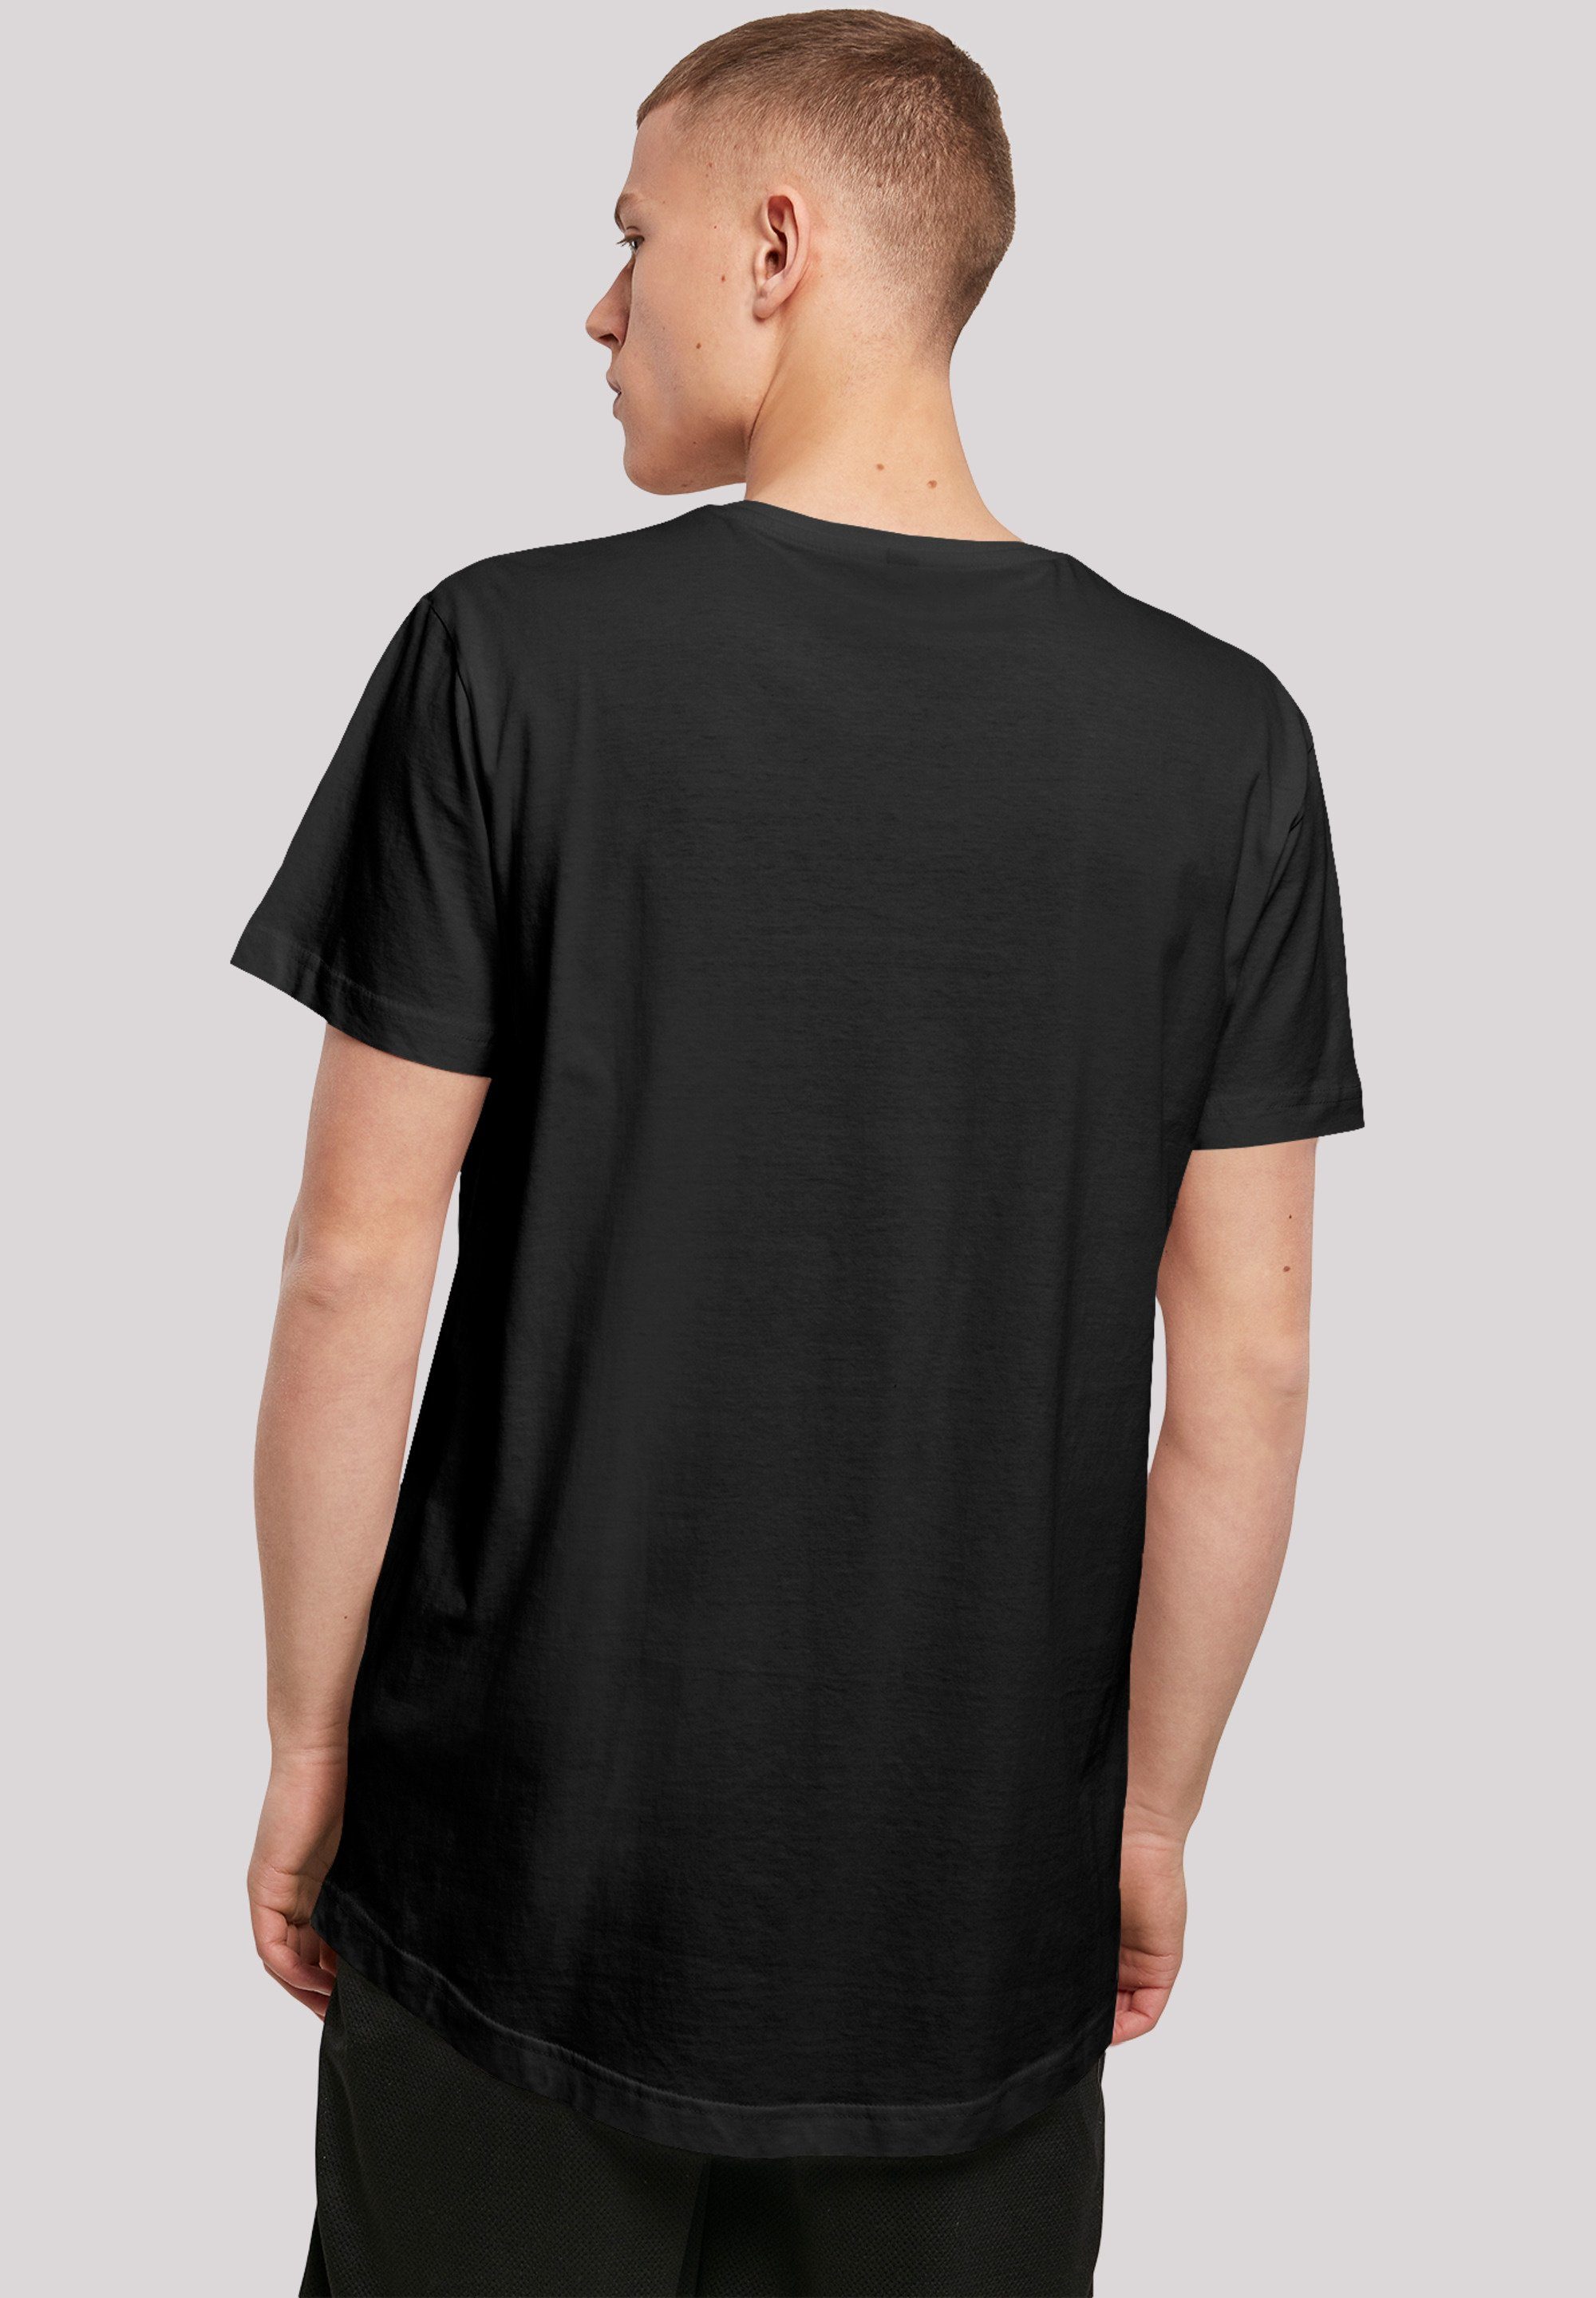 F4NT4STIC Merch,Lang,Longshirt,Bedruckt T-Shirt T-Shirt Herren,Premium F4NT4STIC Cut Long